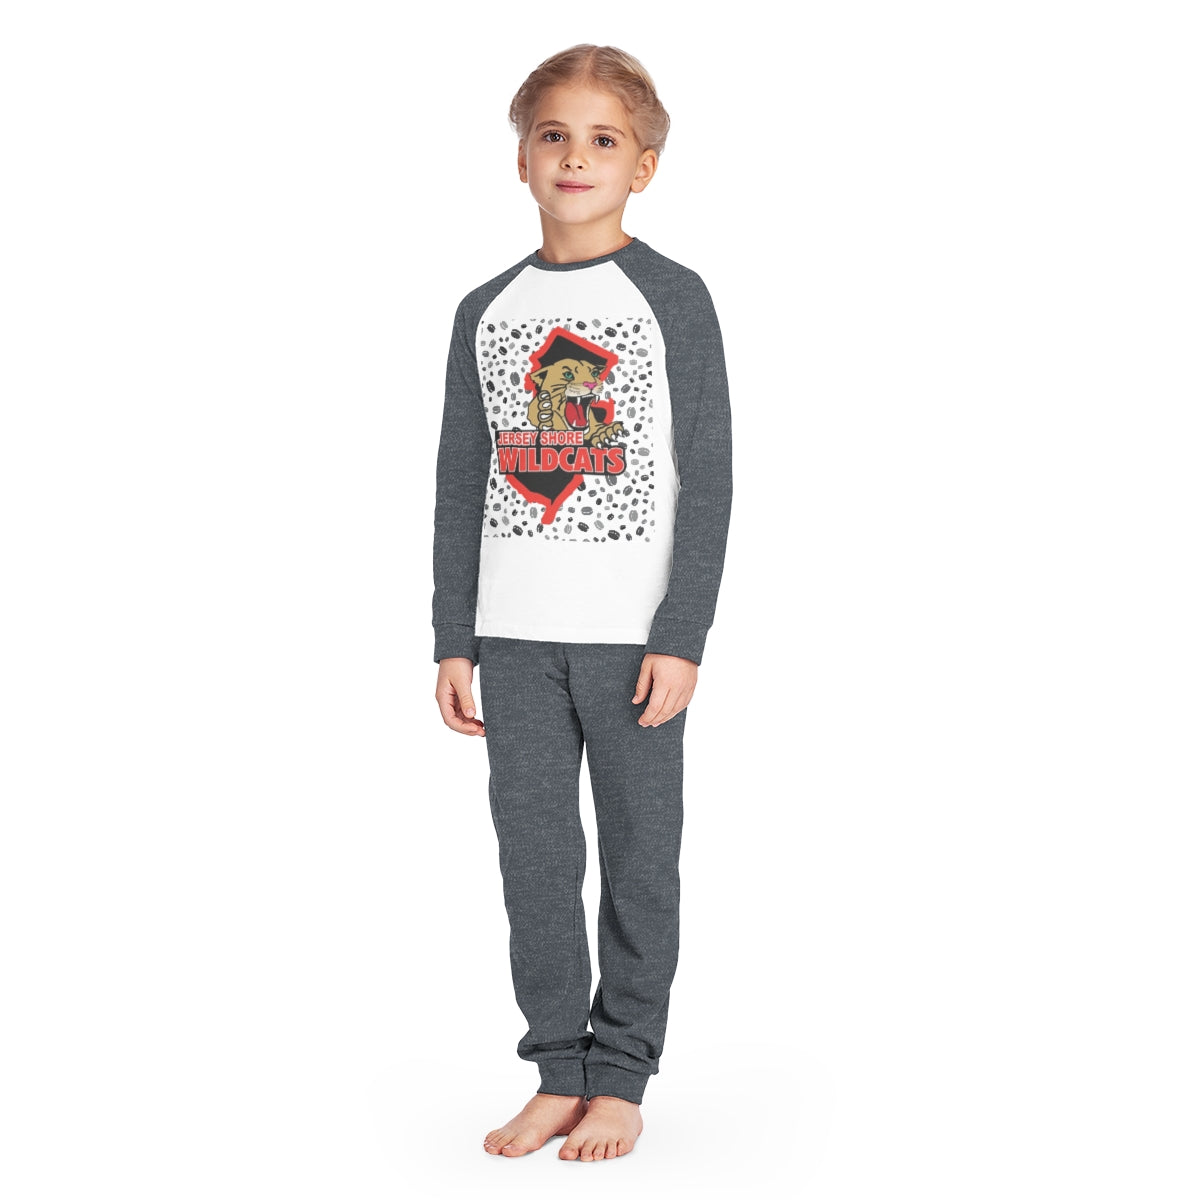 Wildcats Kids' Pajama Set